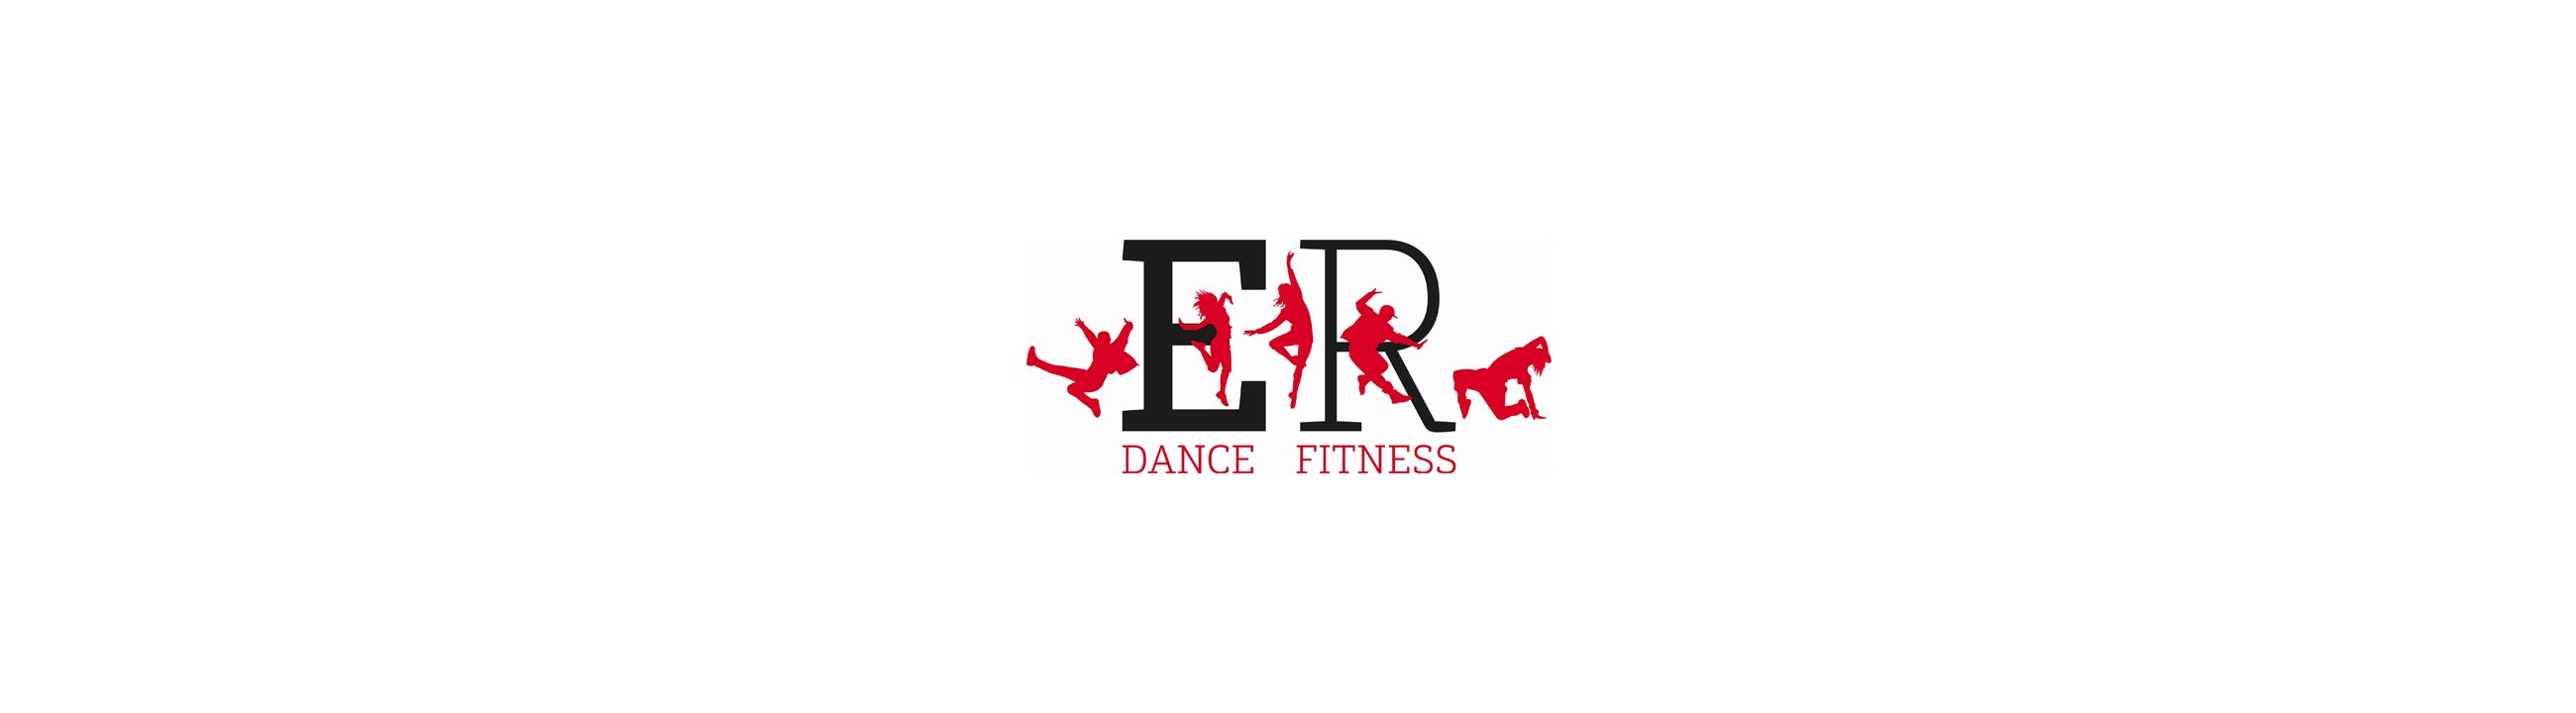 ER Dance Fitness